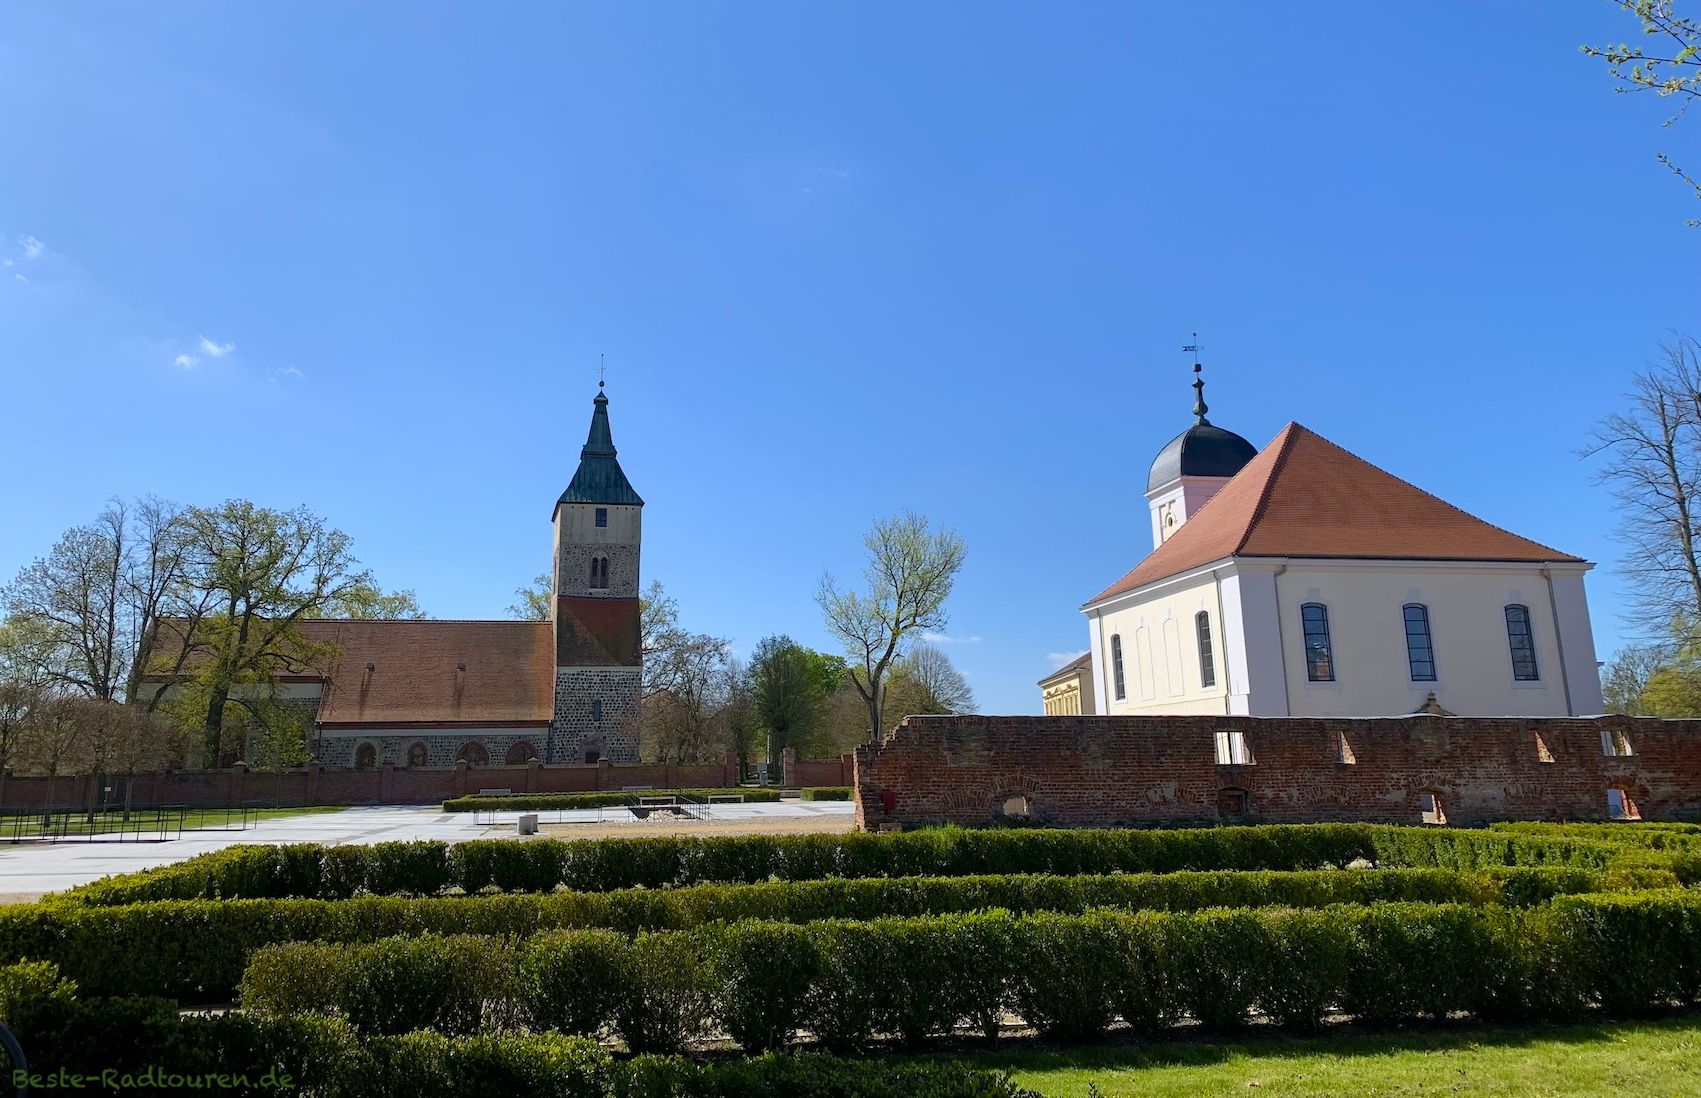 Foto vom Schlossgut Altlandsberg aus: Kirche St. Marien, Schlosskirche